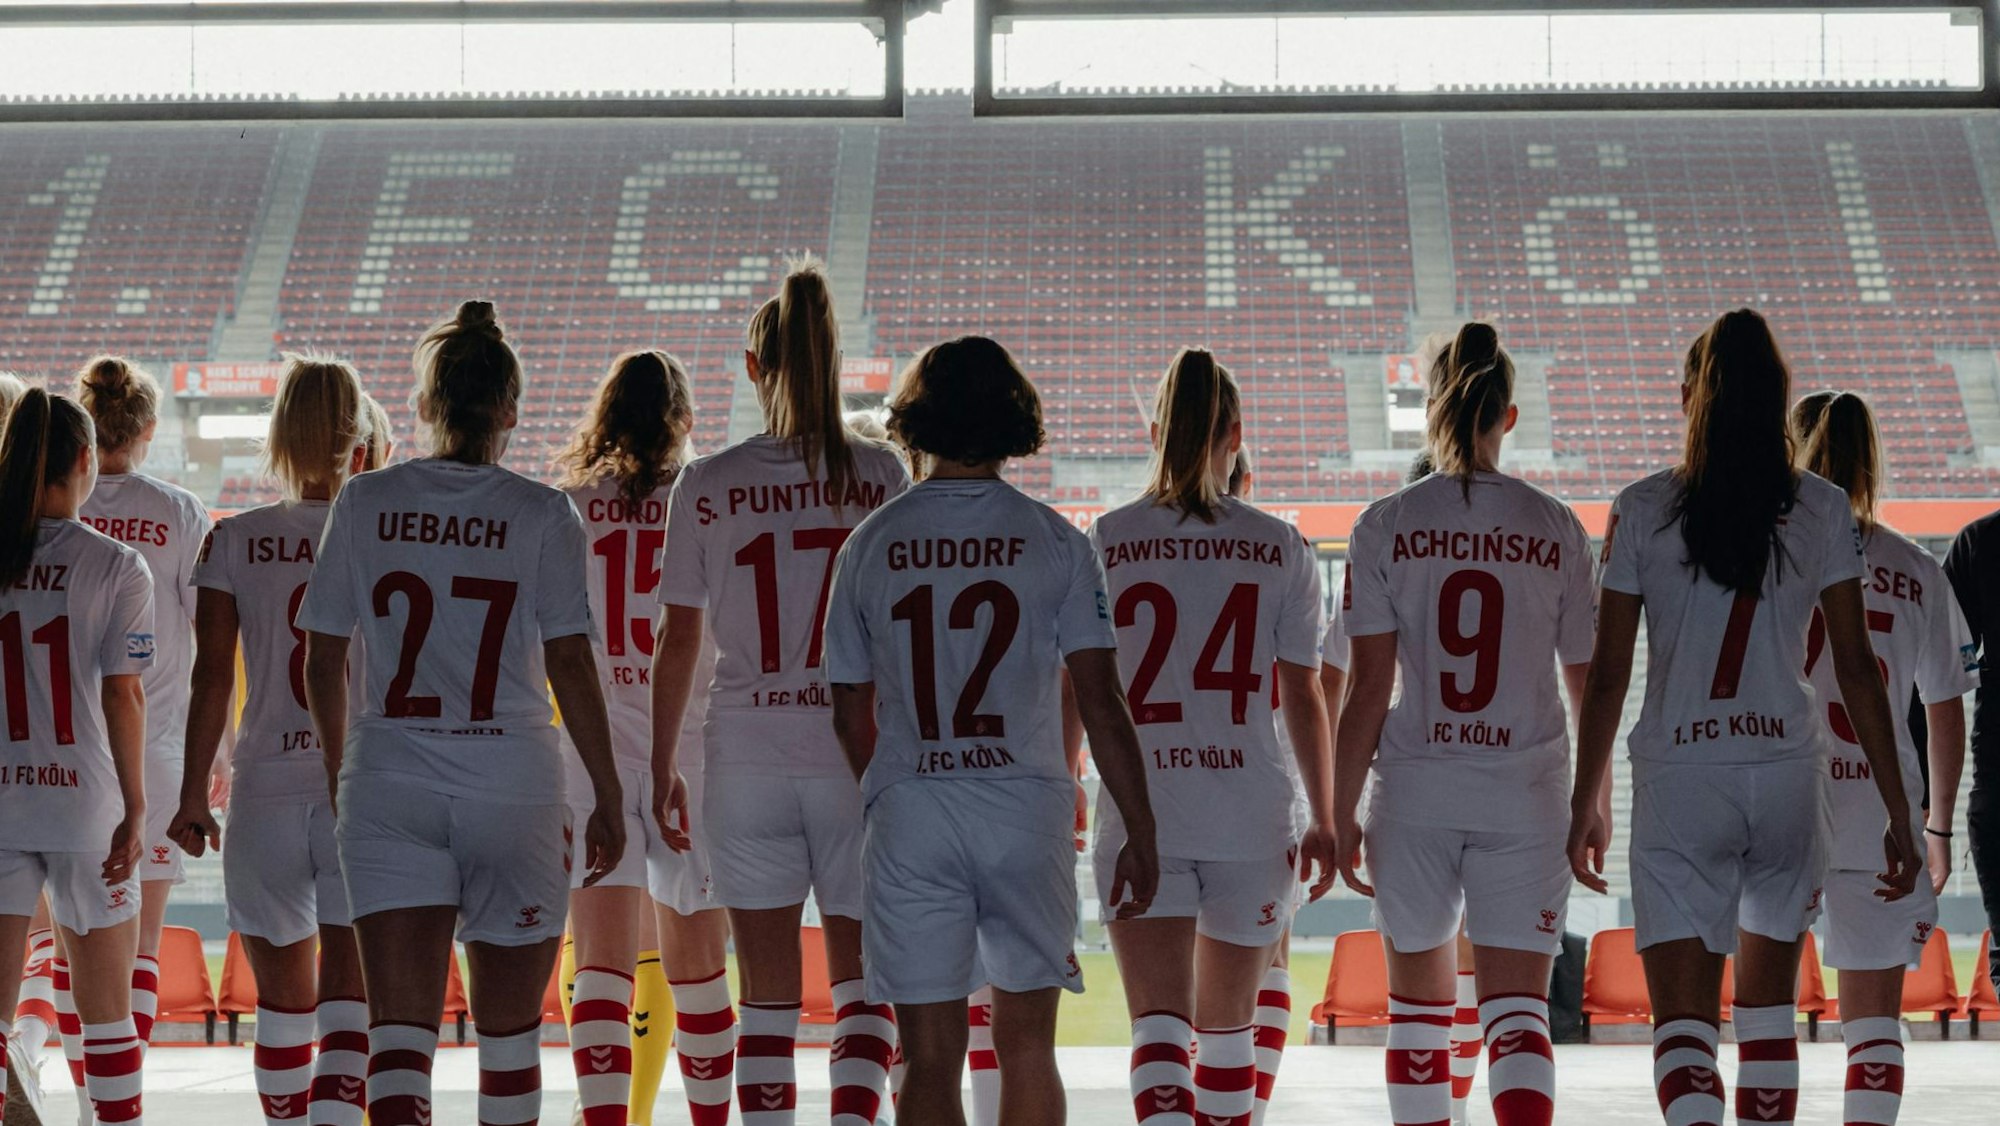 Spielerinnen des 1. FC Köln im Rheinenergie-Stadion